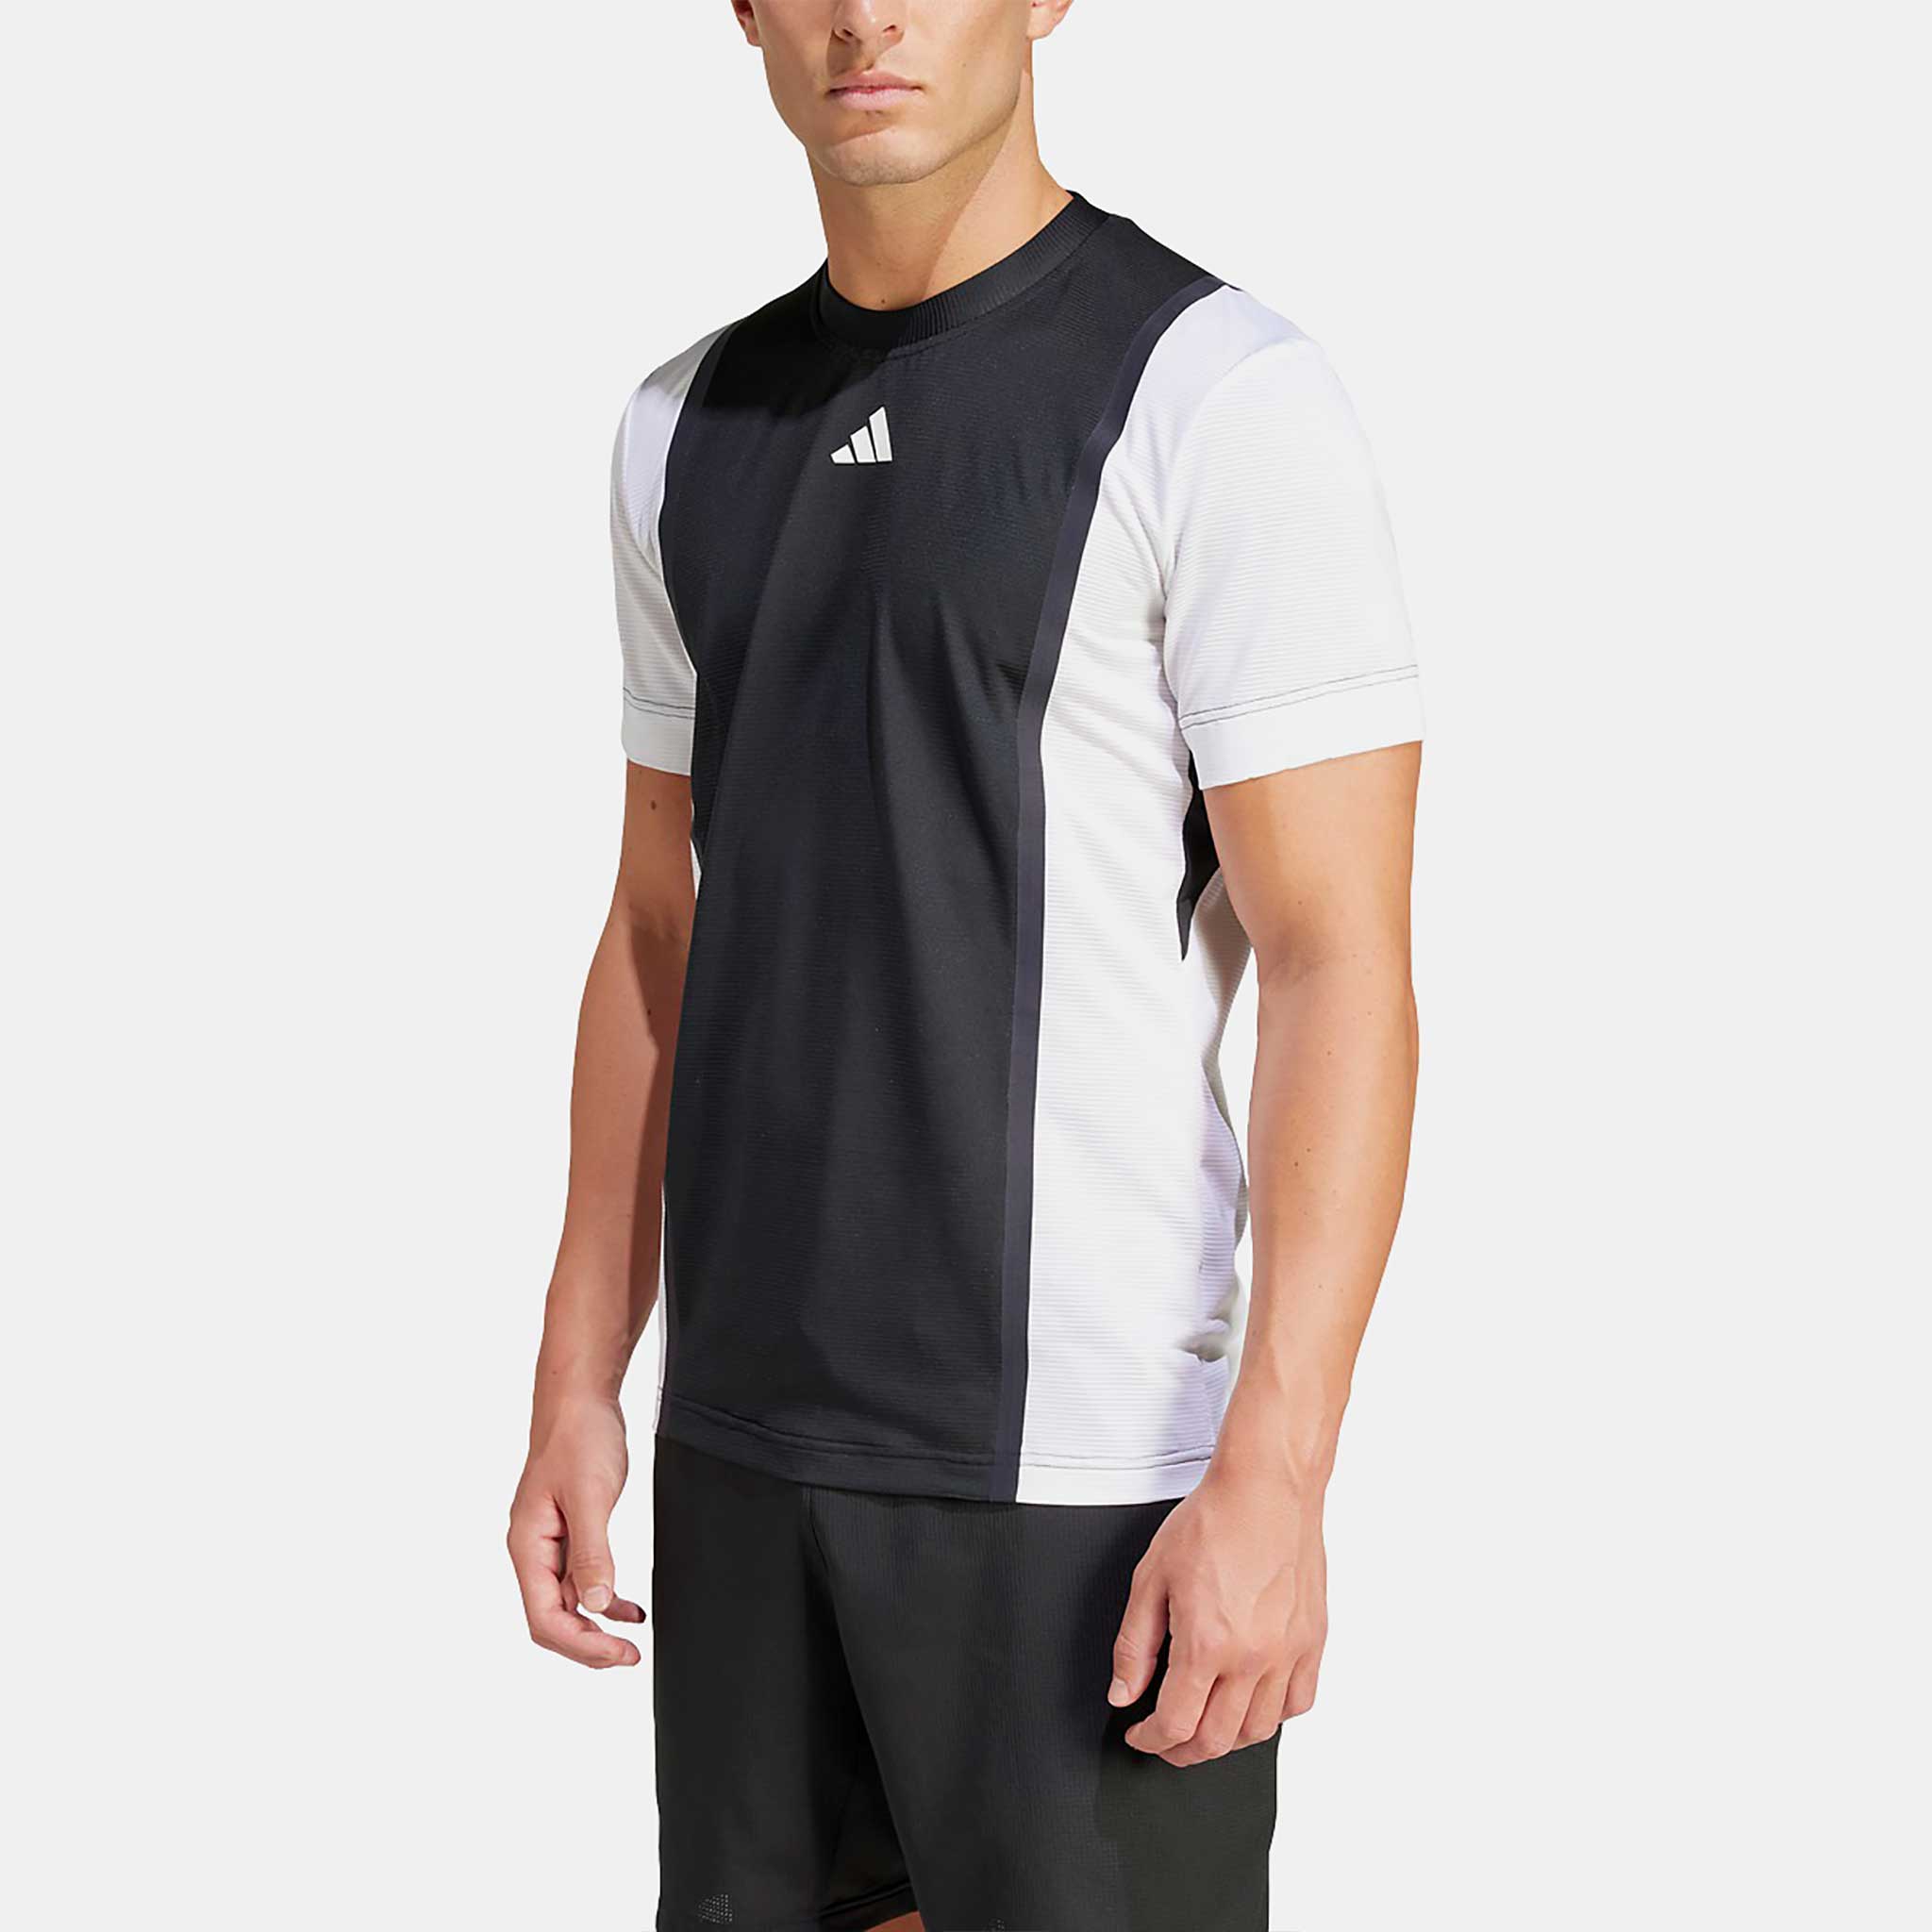 Men's Tennis Clothing, Tennis Shorts & T-shirts